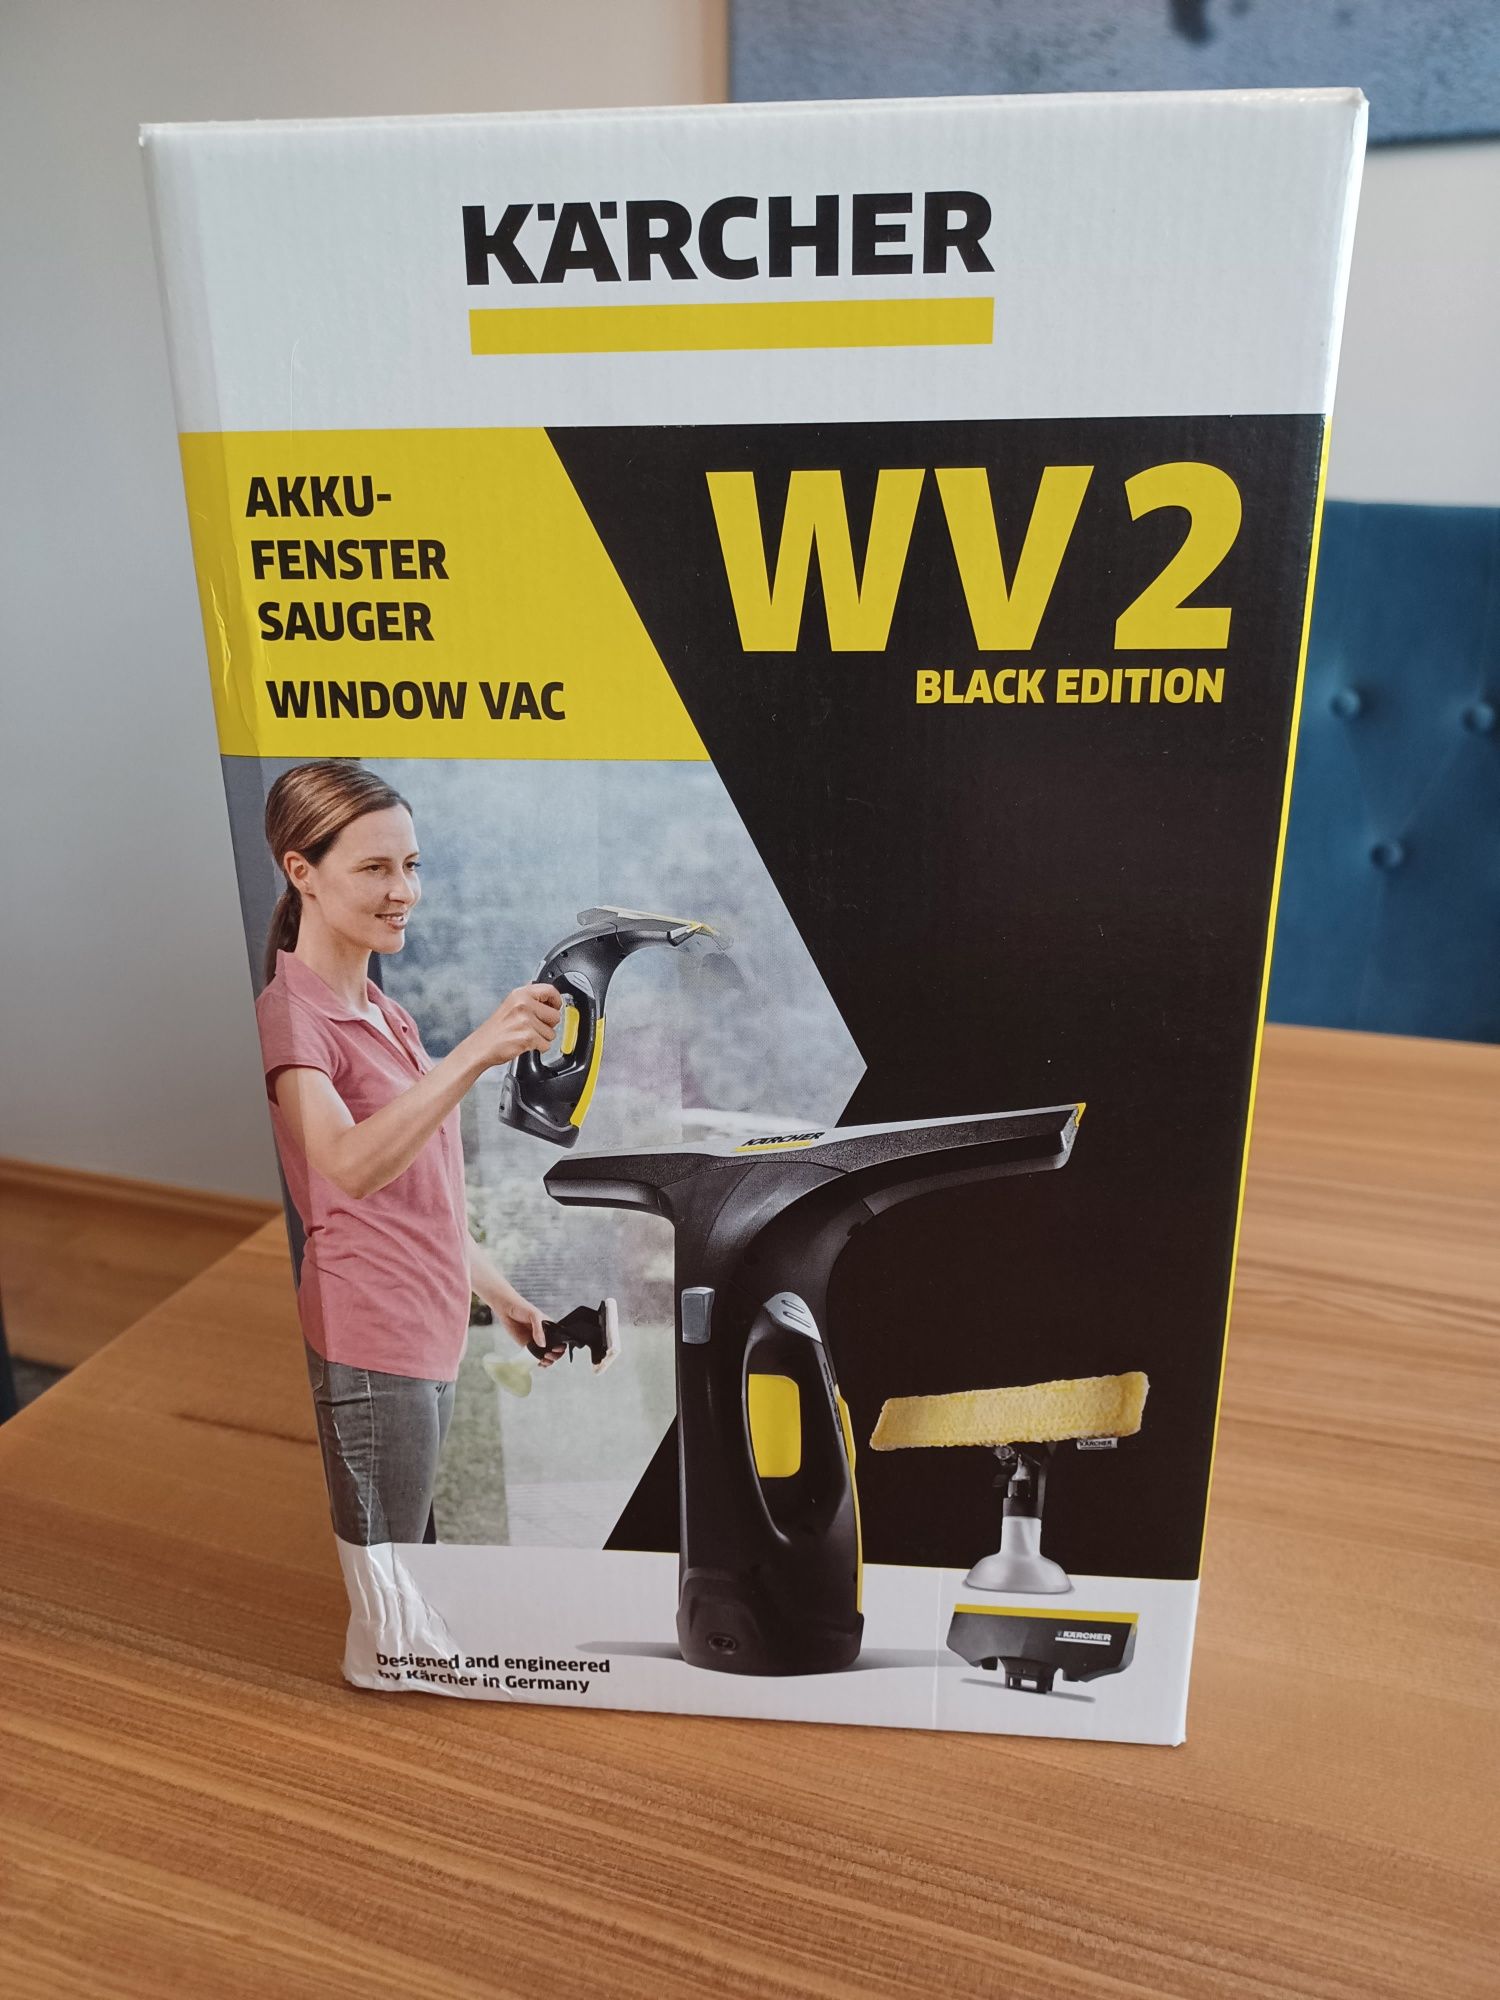 Karcher WV 2 Black Edition